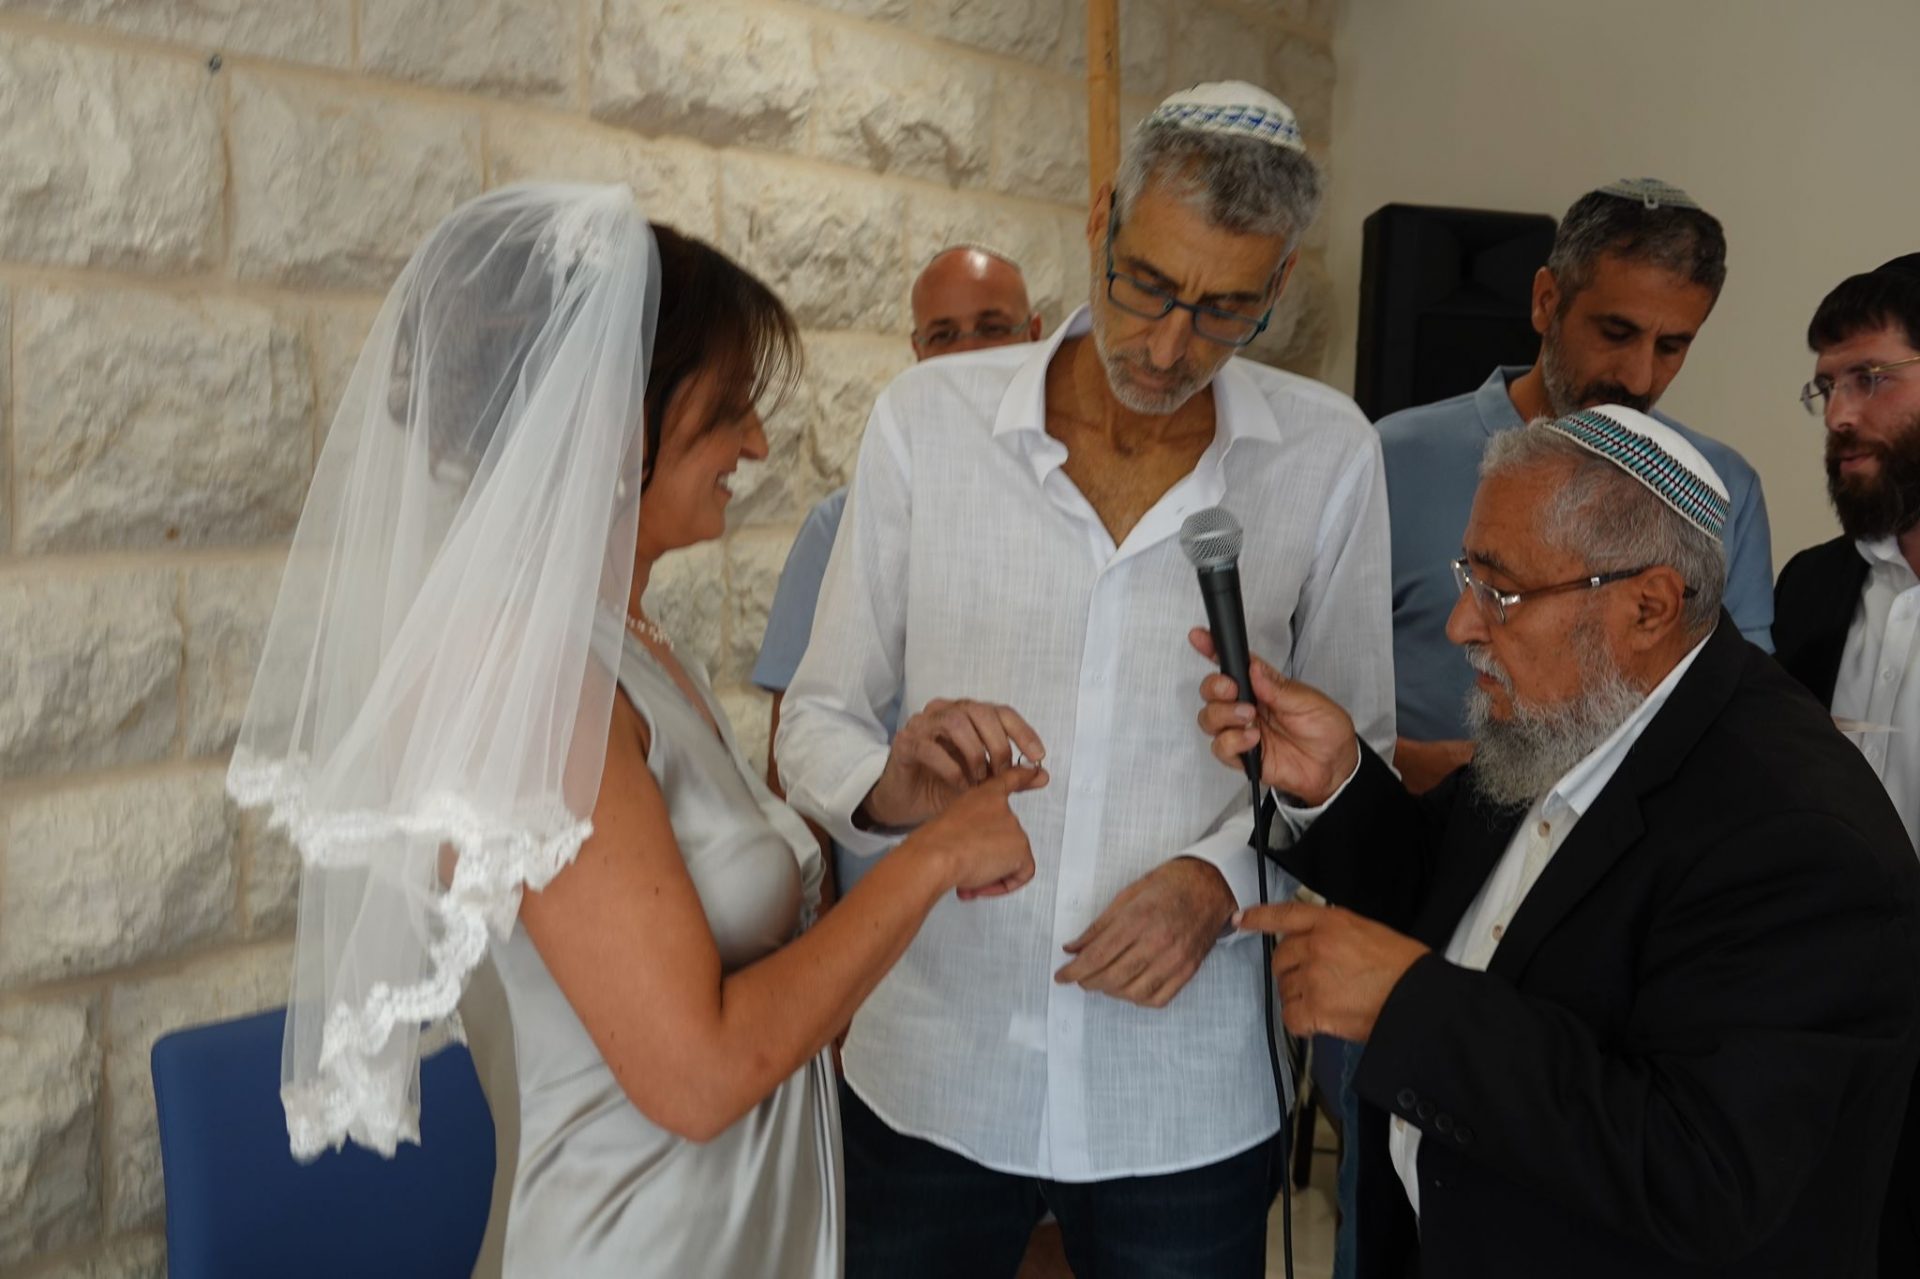 החתונה הכי מרגשת: אחרי שהסרטן הכה בפעם השנייה – עידית וליאב נישאו זה לזו בשנית, הפעם – בשערי צדק